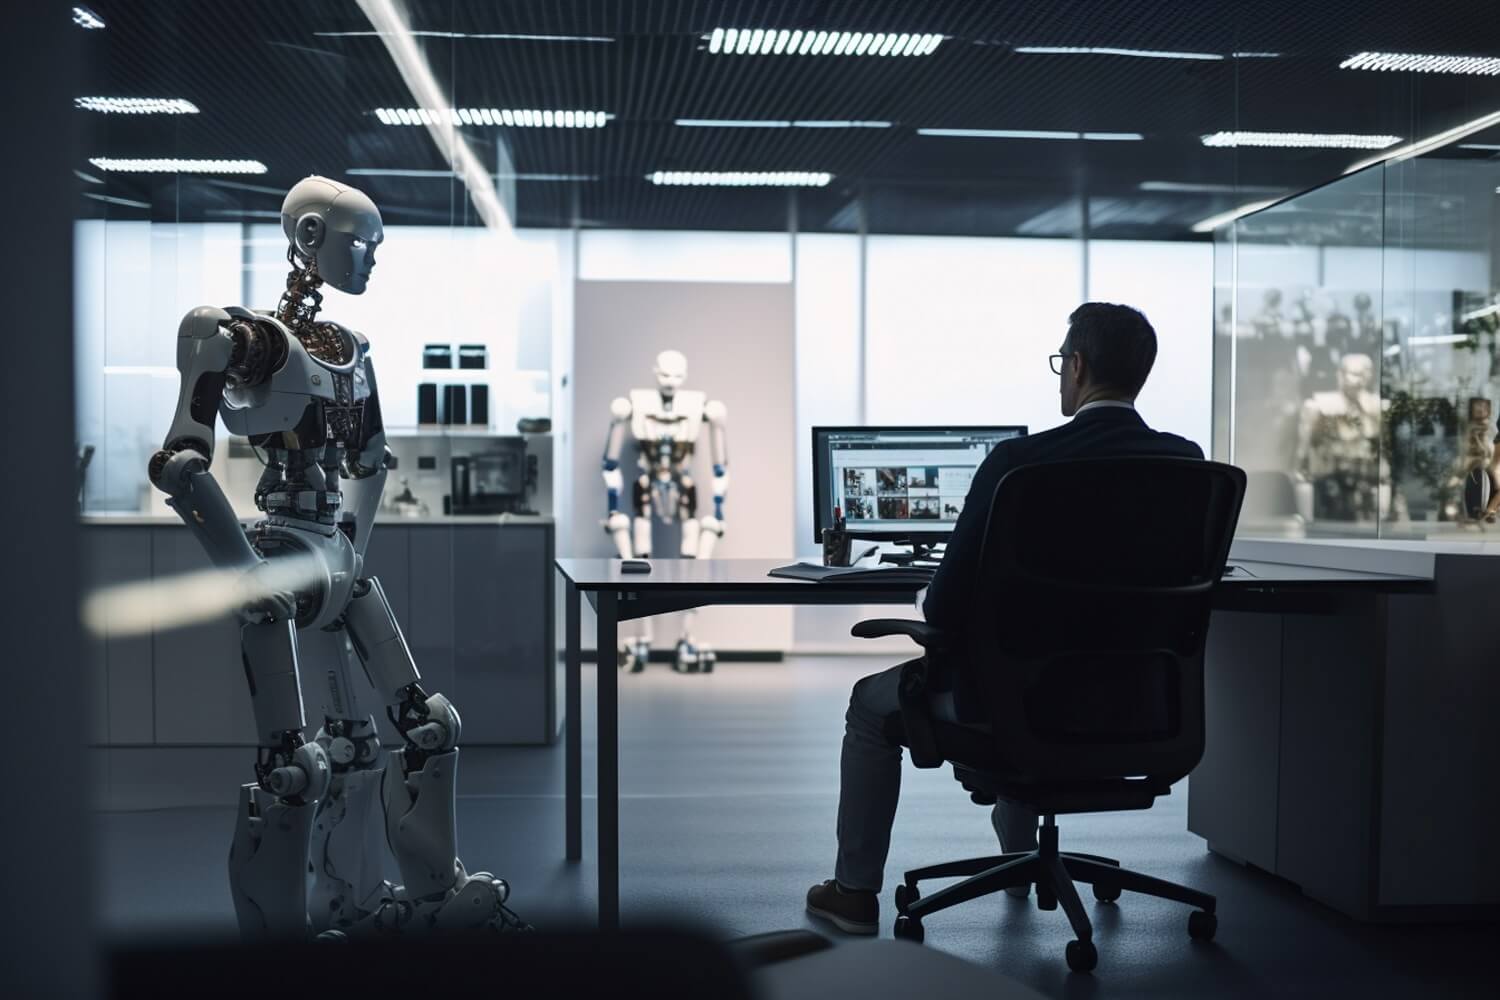 Humano sentado visualizando dois robôs que vão substituí-lo após o surgimento da tecnologia baseada no ChatGPT.